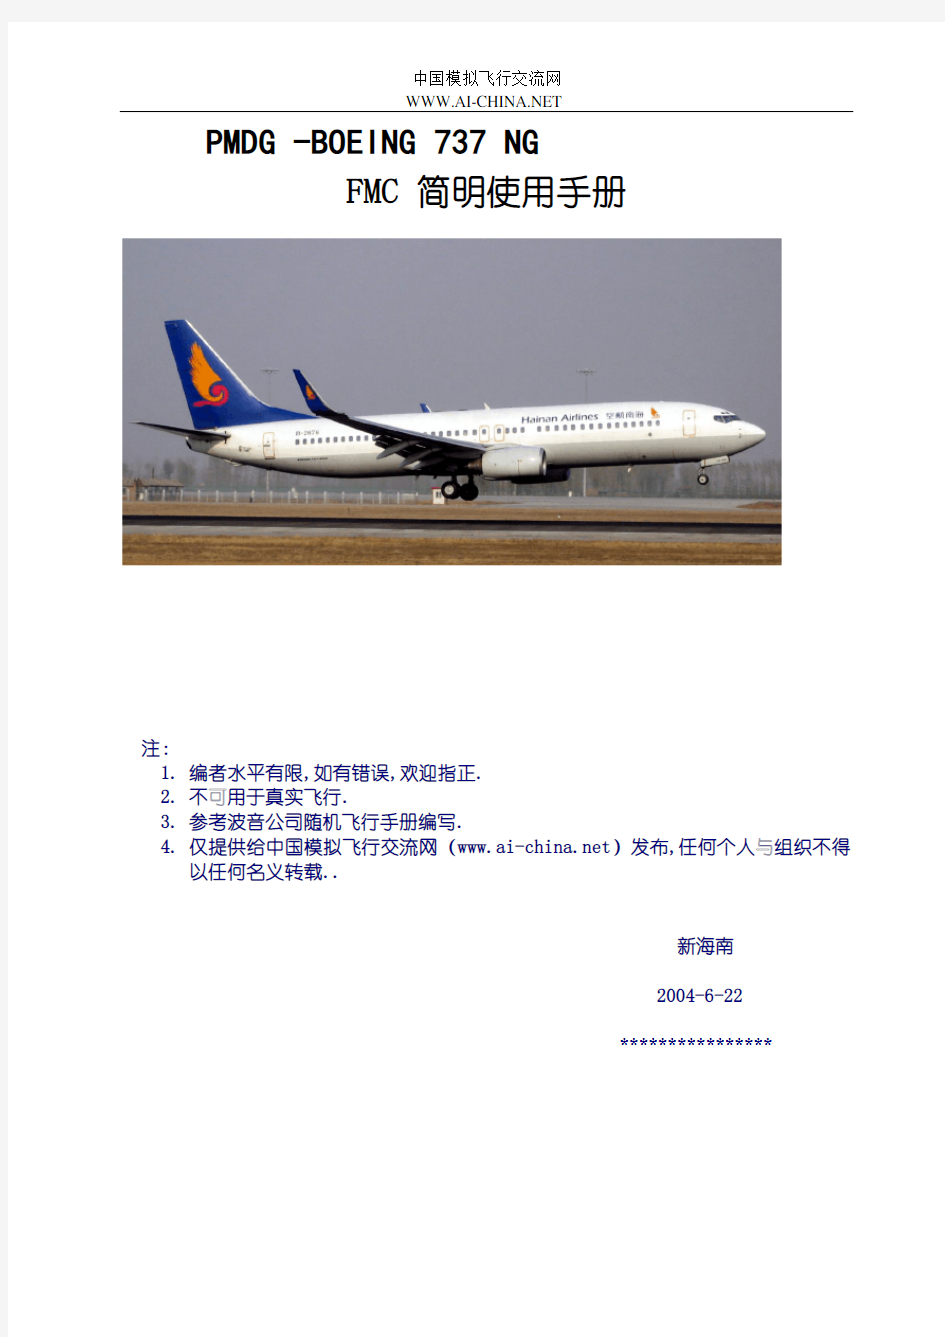 PMDG -BOEING 737 NG FMC简明实用手册